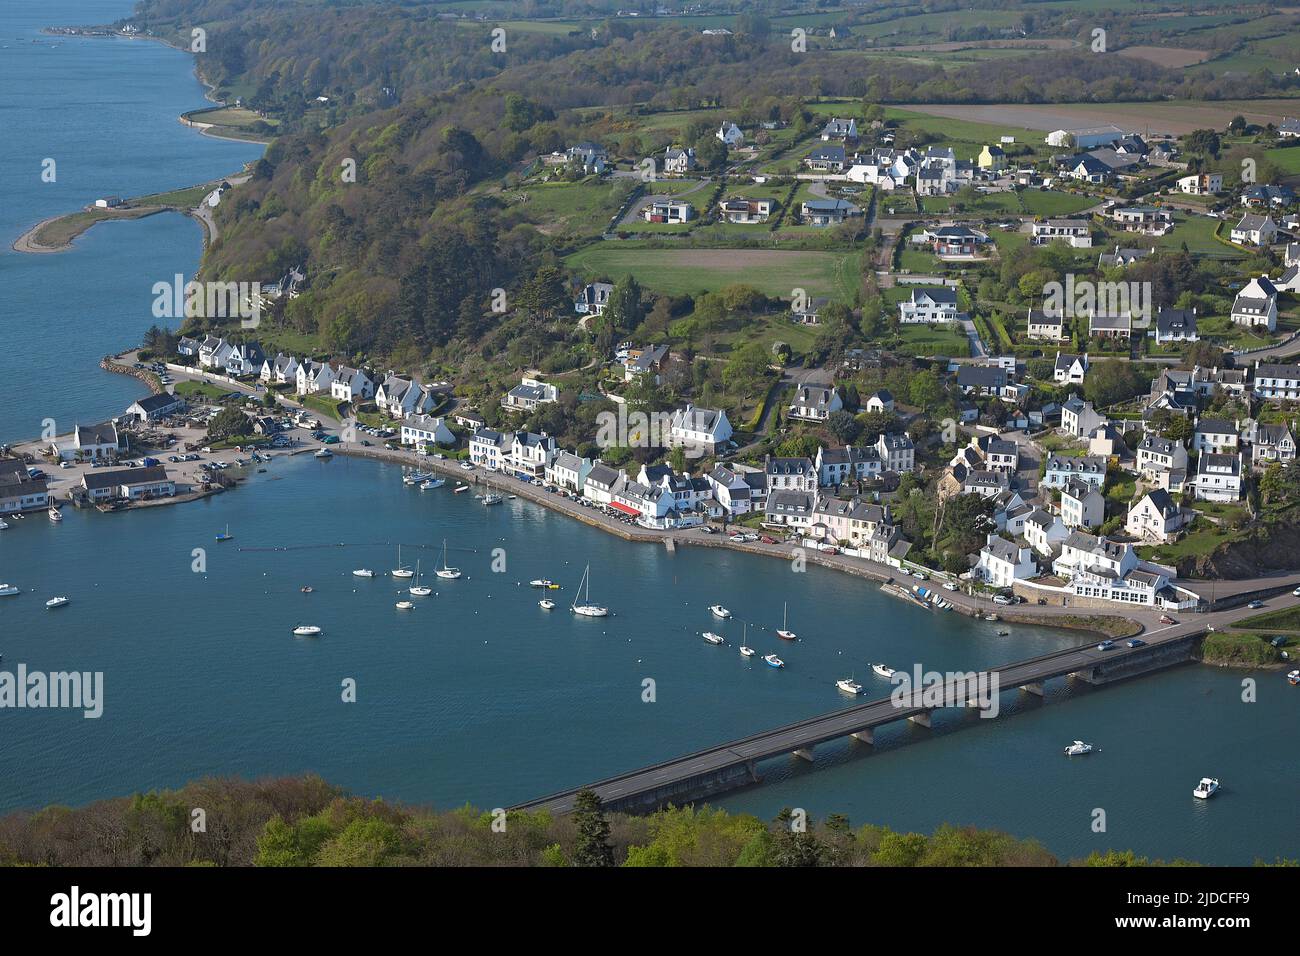 France, Finistère le Dourduff-en-Mer (Plouezoc'h) le petit port de la baie de Morlaix (vue aérienne) Banque D'Images